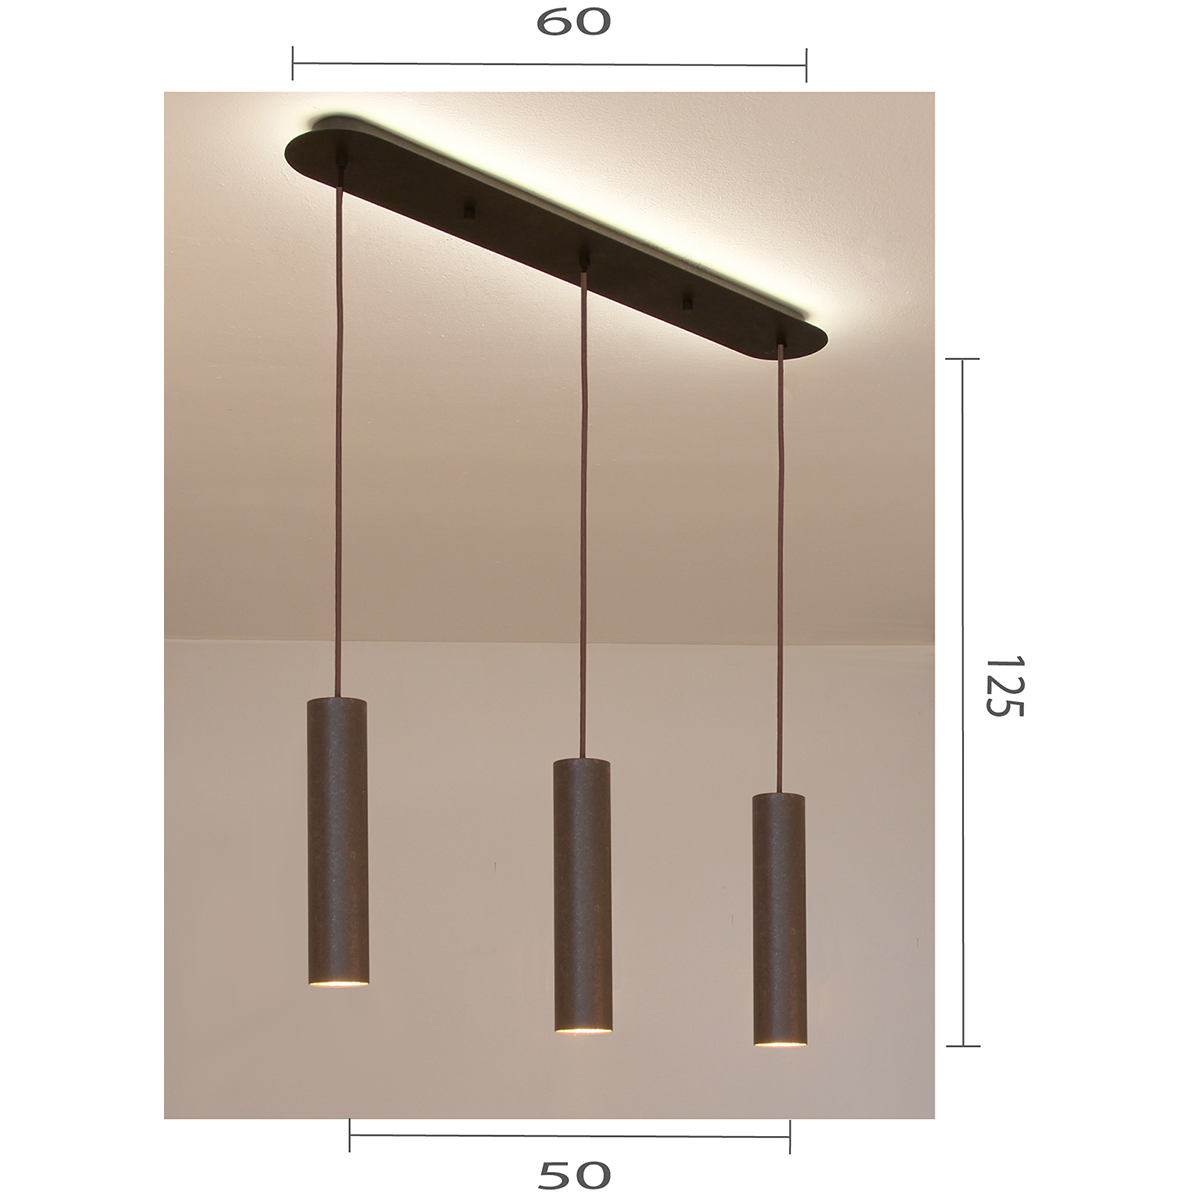 Solo Hängeleuchte Gehänge 60 für Einzel Pendel LED GU10 braun schwarz für Tische ab 100cm Baldachin L=60cm Landhaus